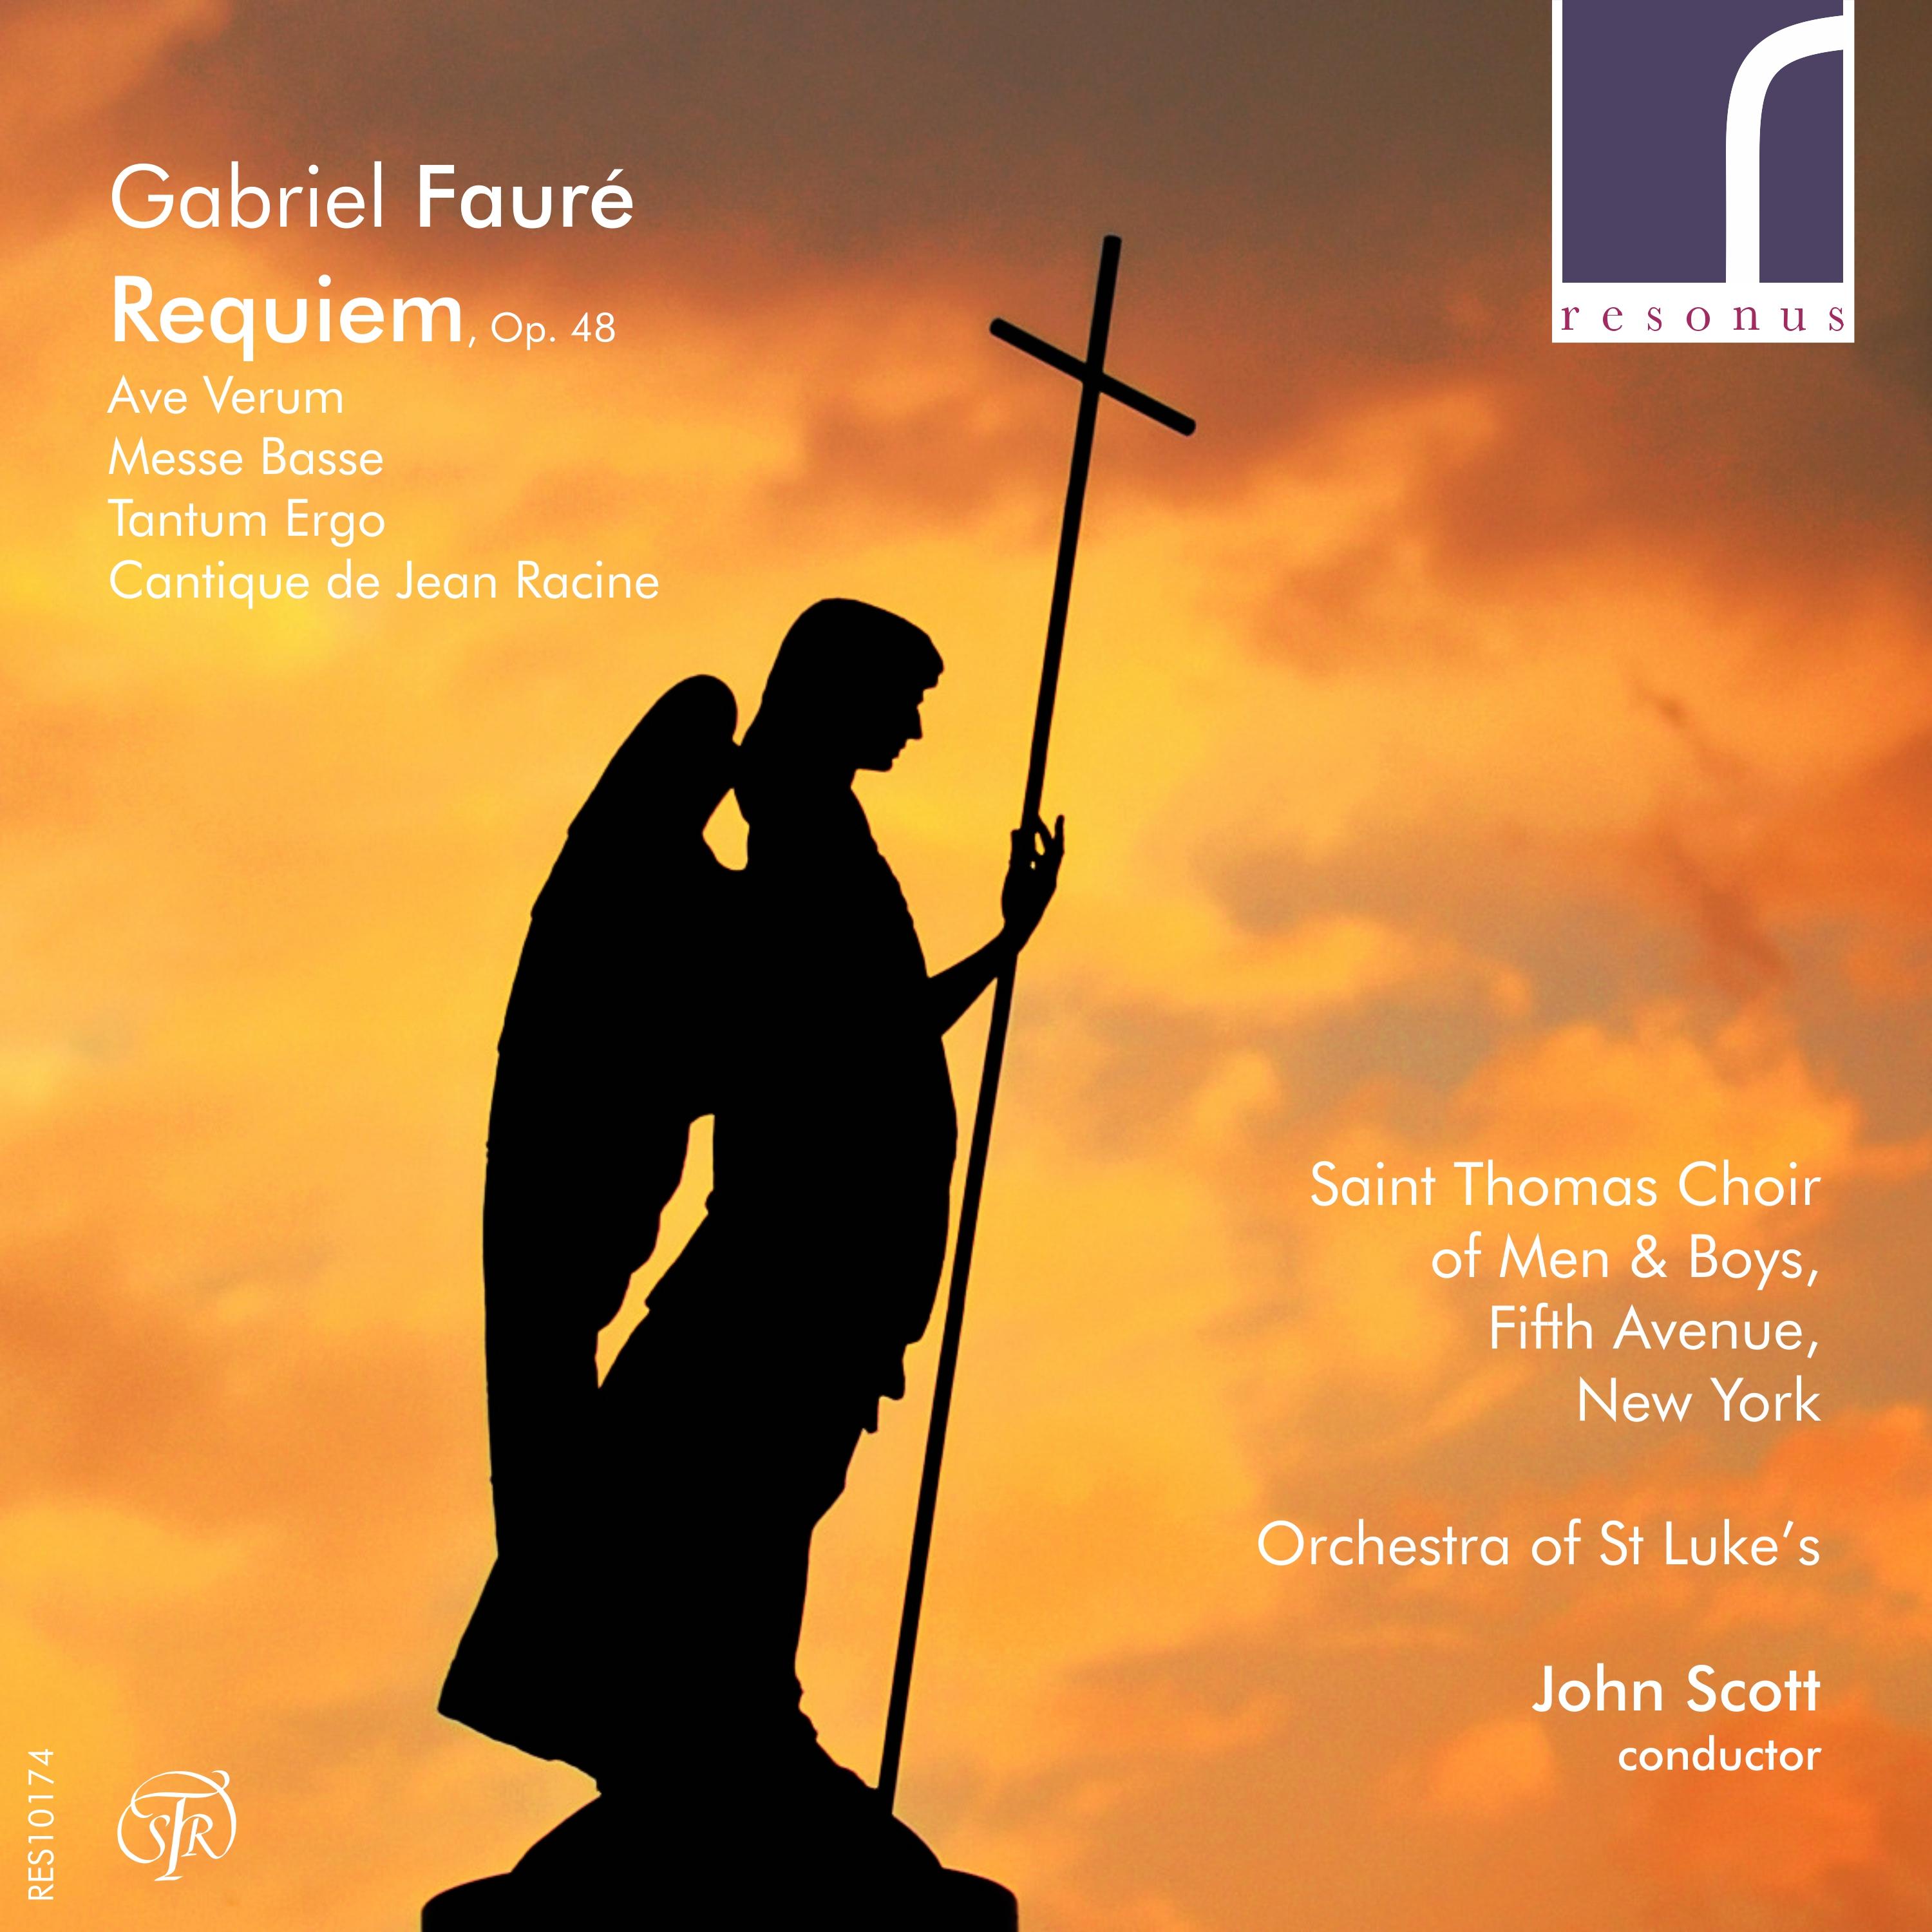 Gabriel Faure: Requiem, Op. 48